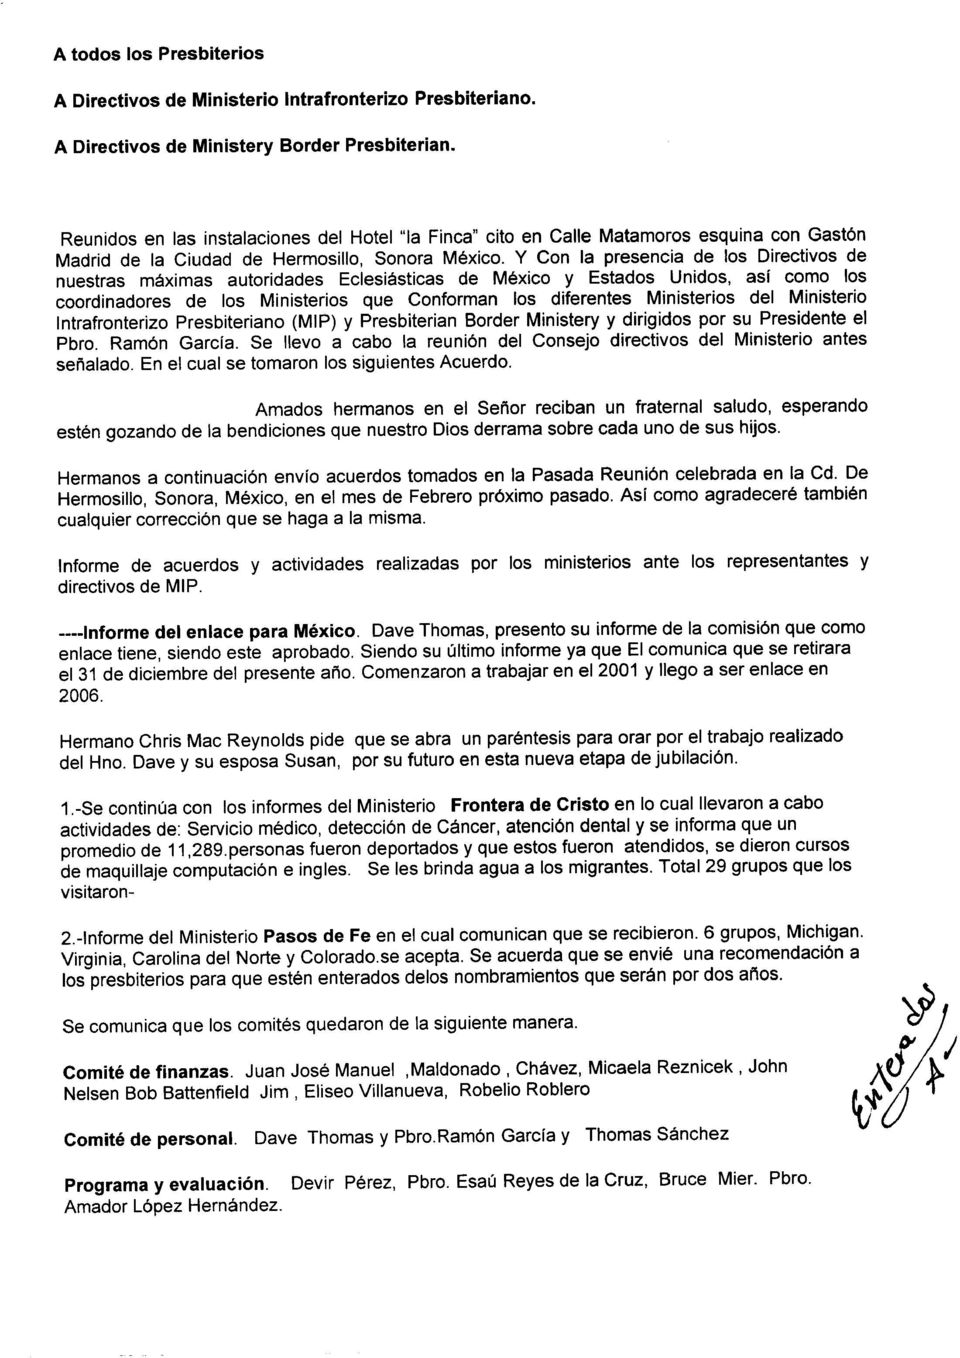 del Ministerio Intrafronterizo Presbiteriano (MIP) y Presbiterian Border Ministery y dirigidos por su Presidente el Pbro. Ramón García.